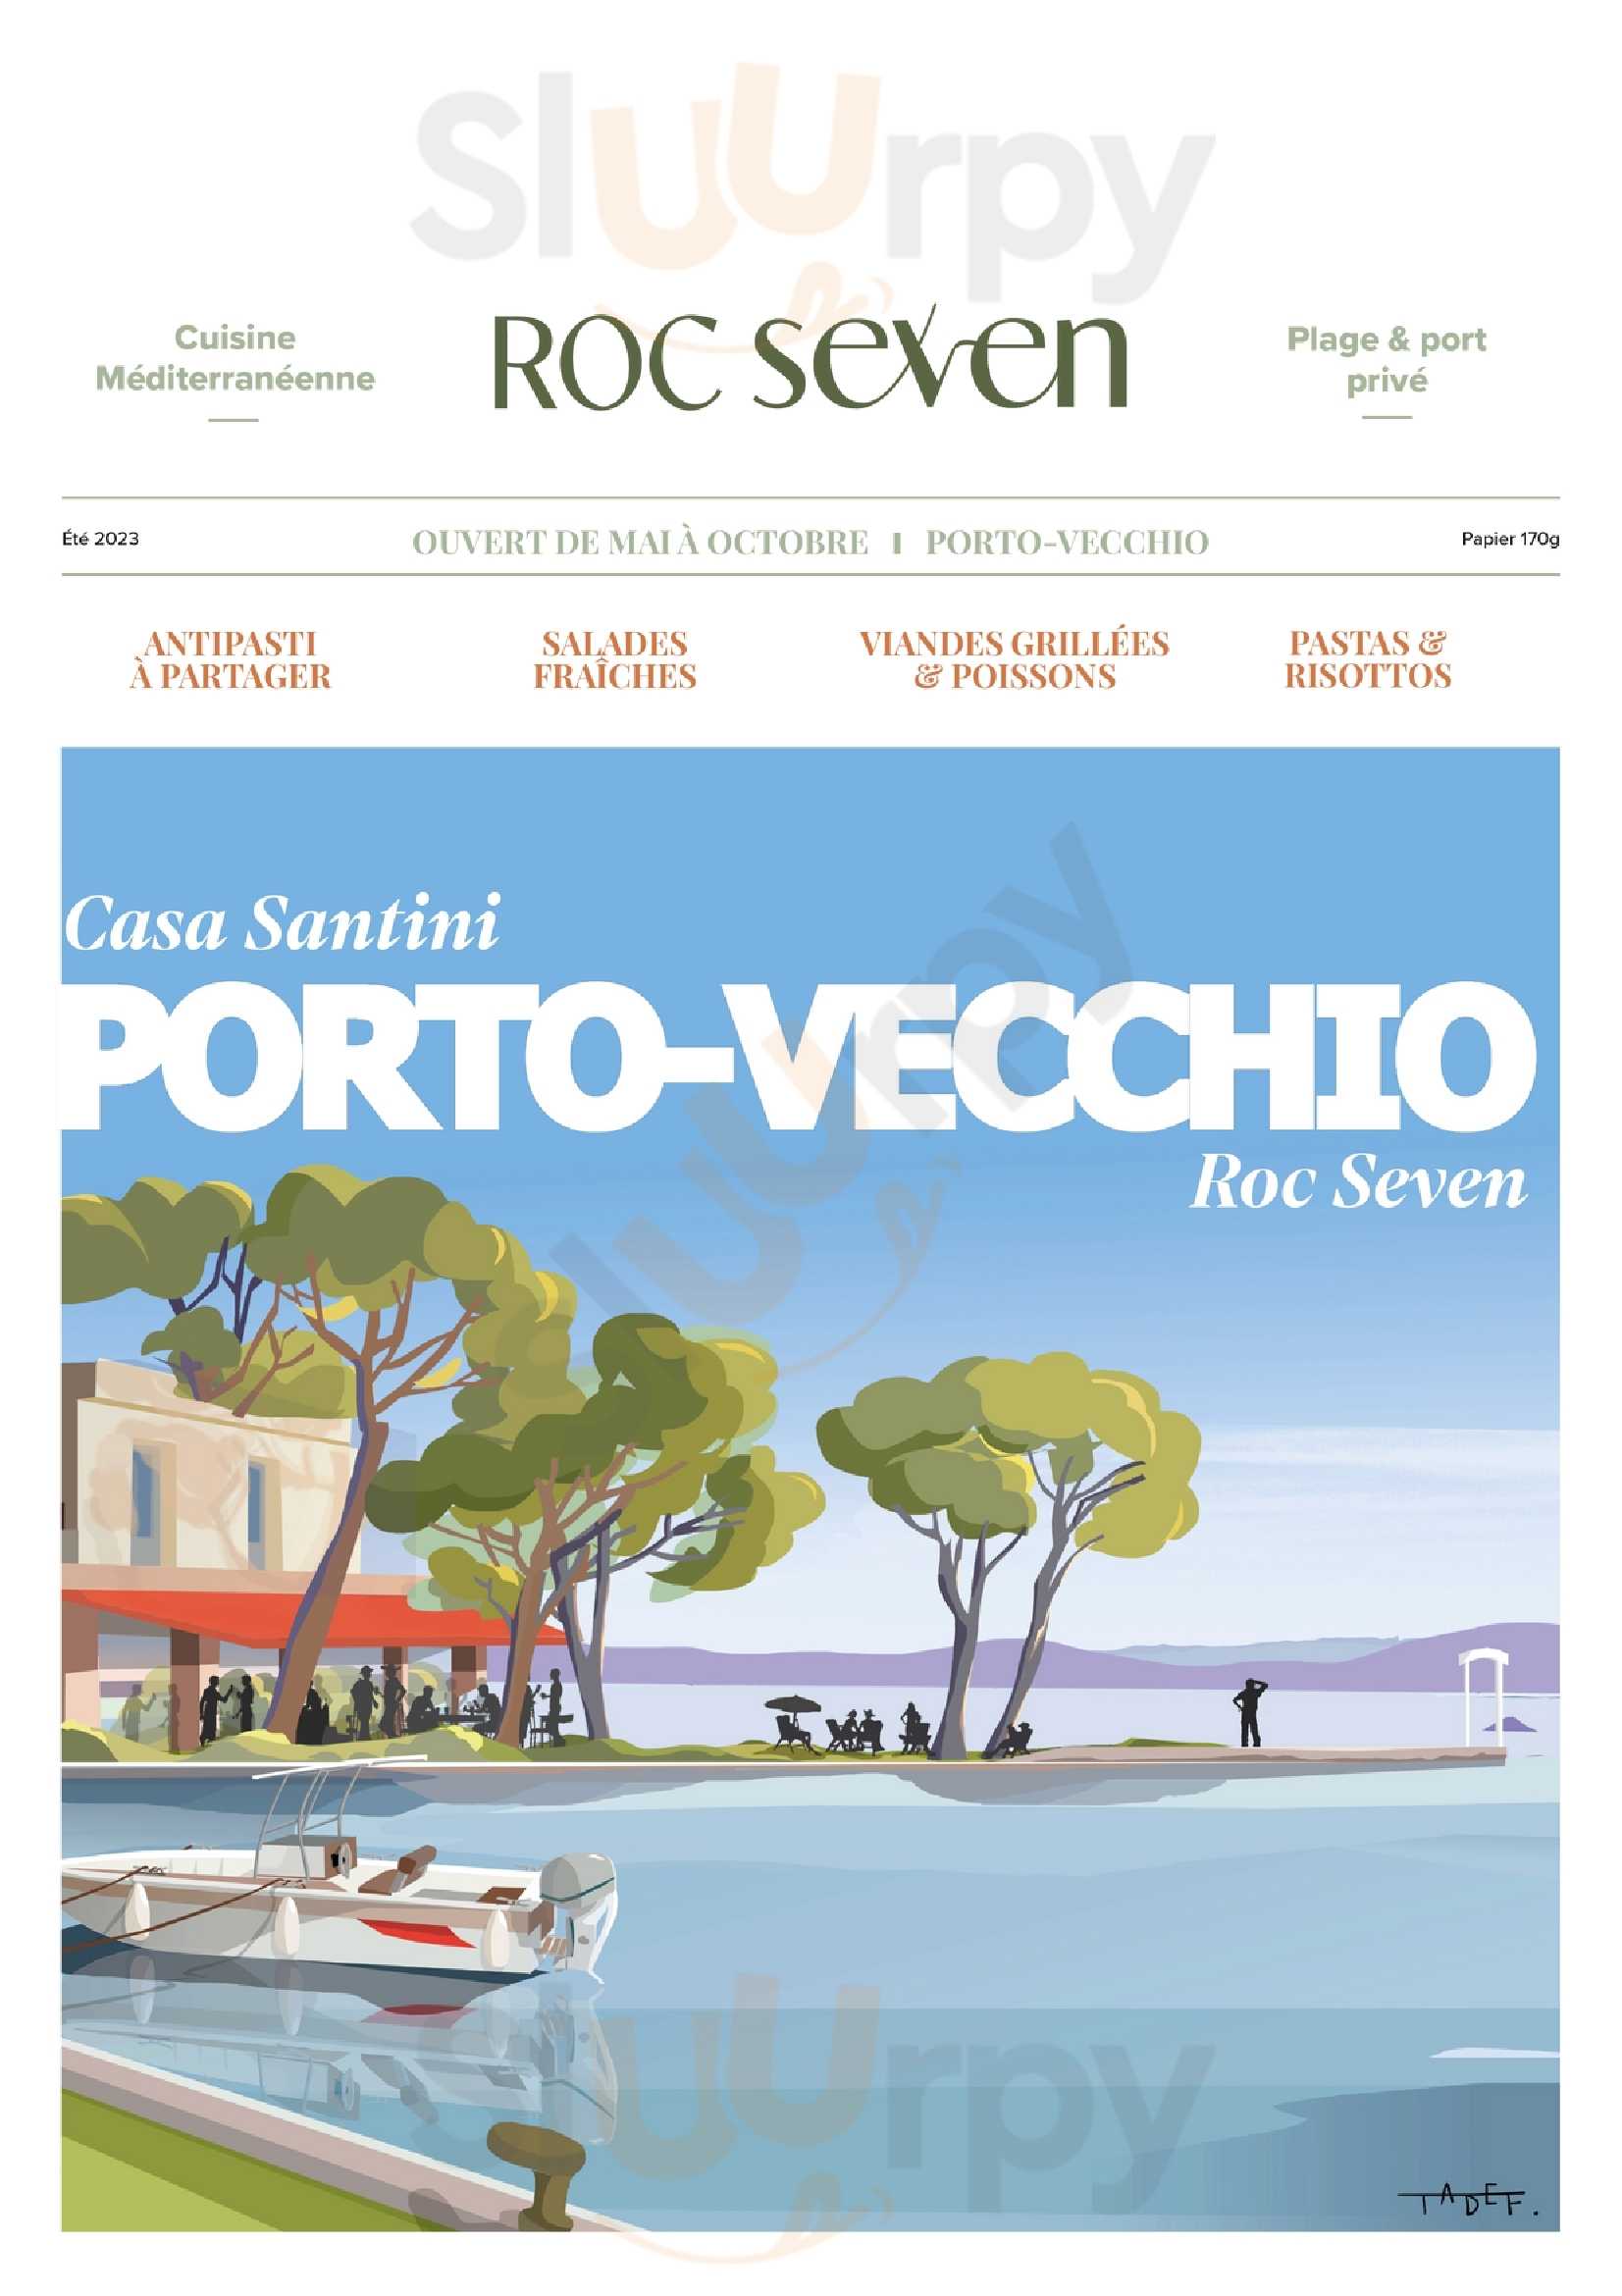 Roc Seven Porto-vecchio Porto-Vecchio Menu - 1